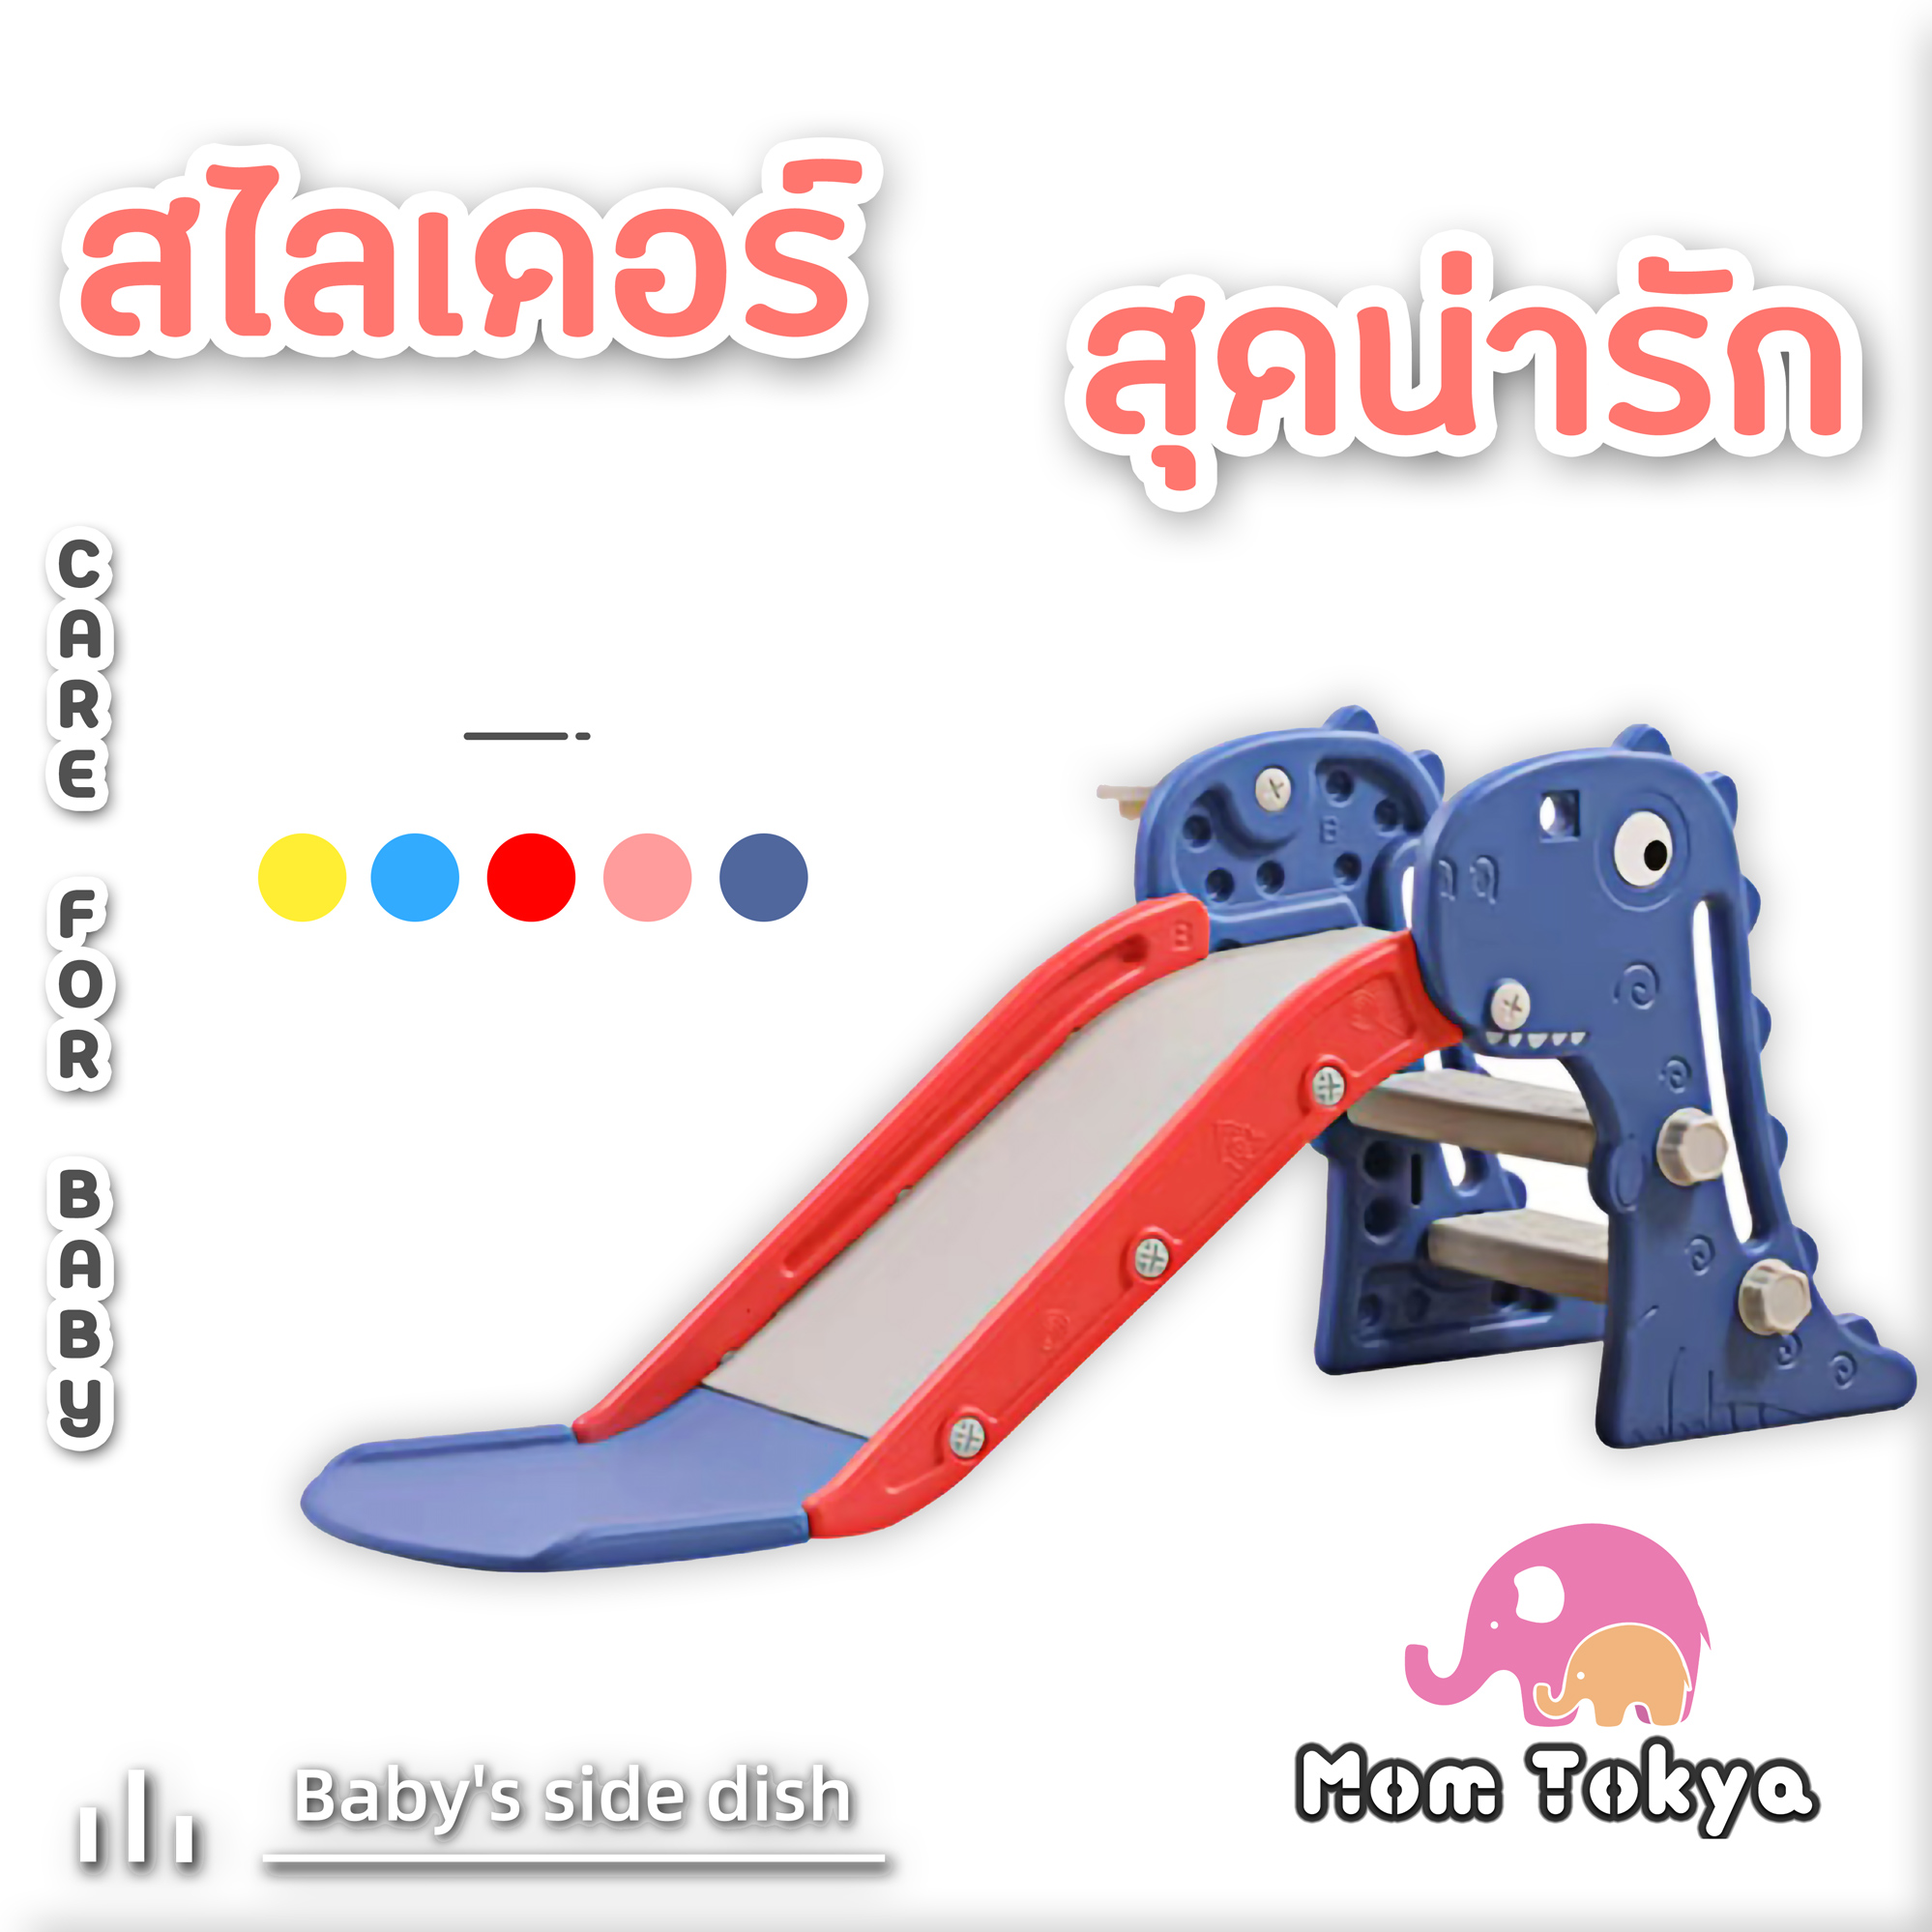 MoM Tokya กระดานลื่น สไลเดอร์เด็ก สไลเดอร์เด็กโต ประกอบง่าย มี5สีให้เลือก มั่งคง แข็งแรง สไลเดอร์ ของเล่นเด็ก ของเล่น ของเล่นเด็กโต